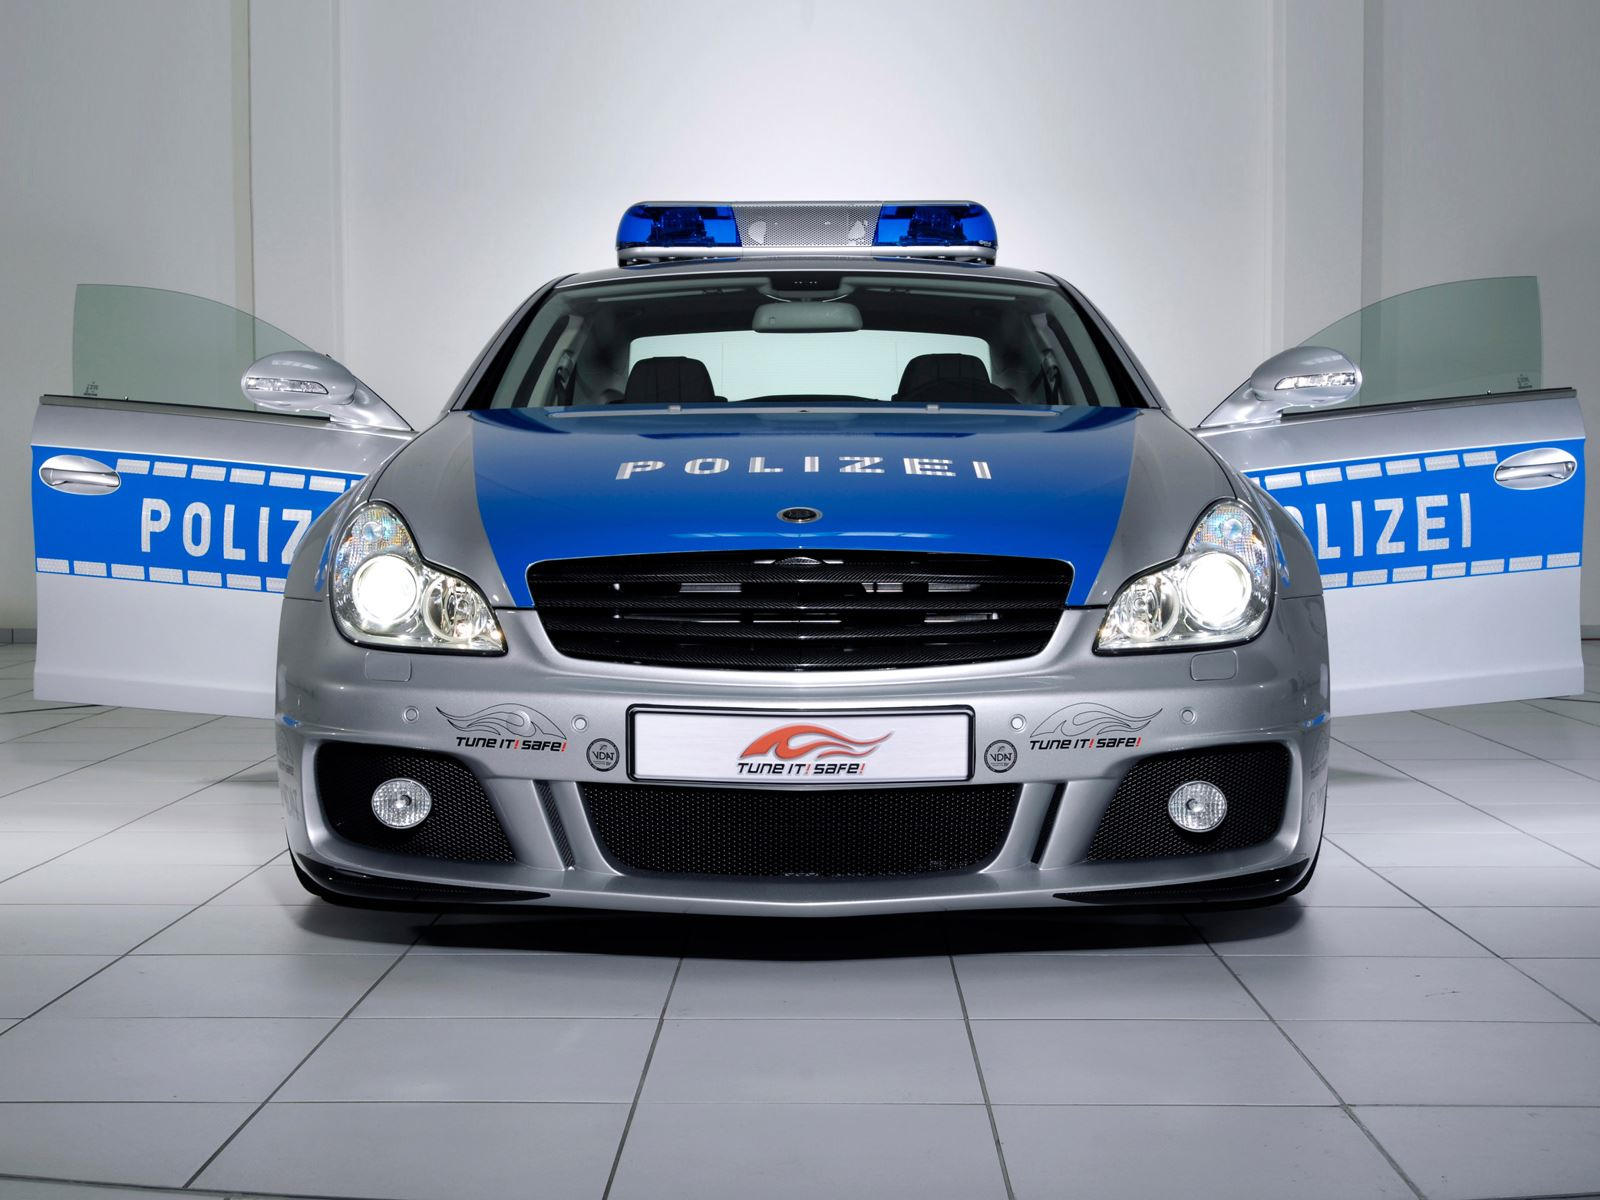 "بالصور" أكثر 10 سيارات شرطة تميزا حول العالم 11